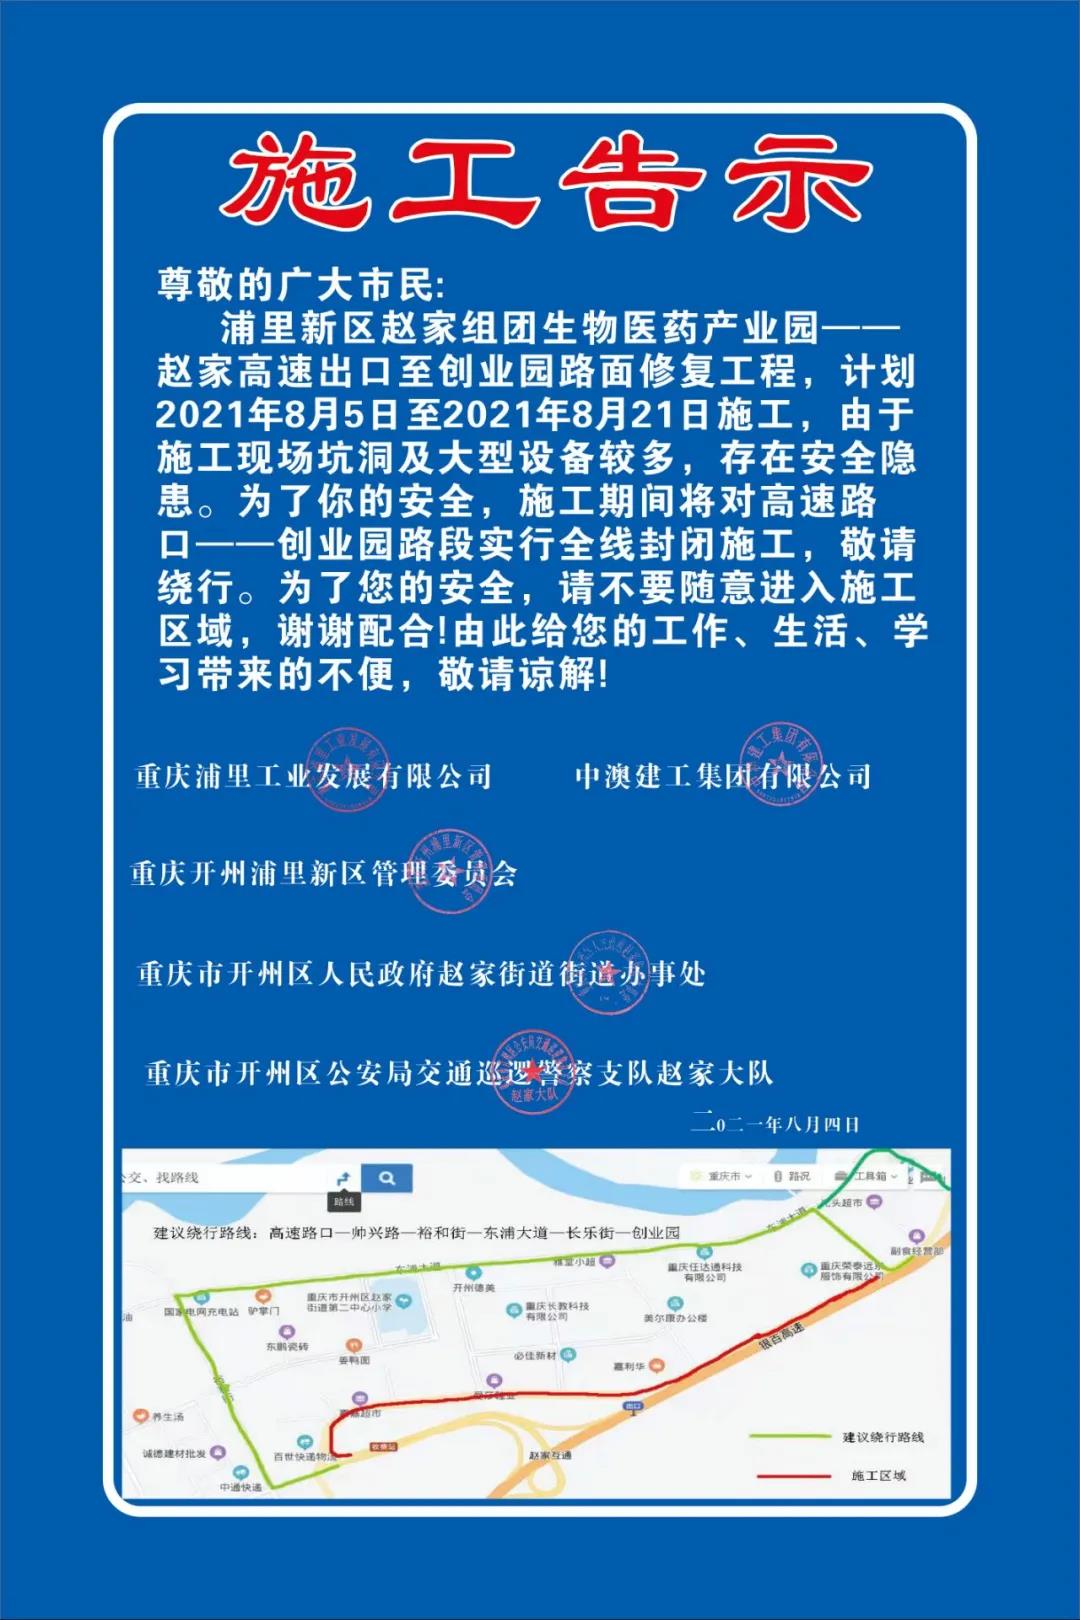 mile米乐m6：赵家高速到这里在昨日开启修复路面工程，需要绕道行驶